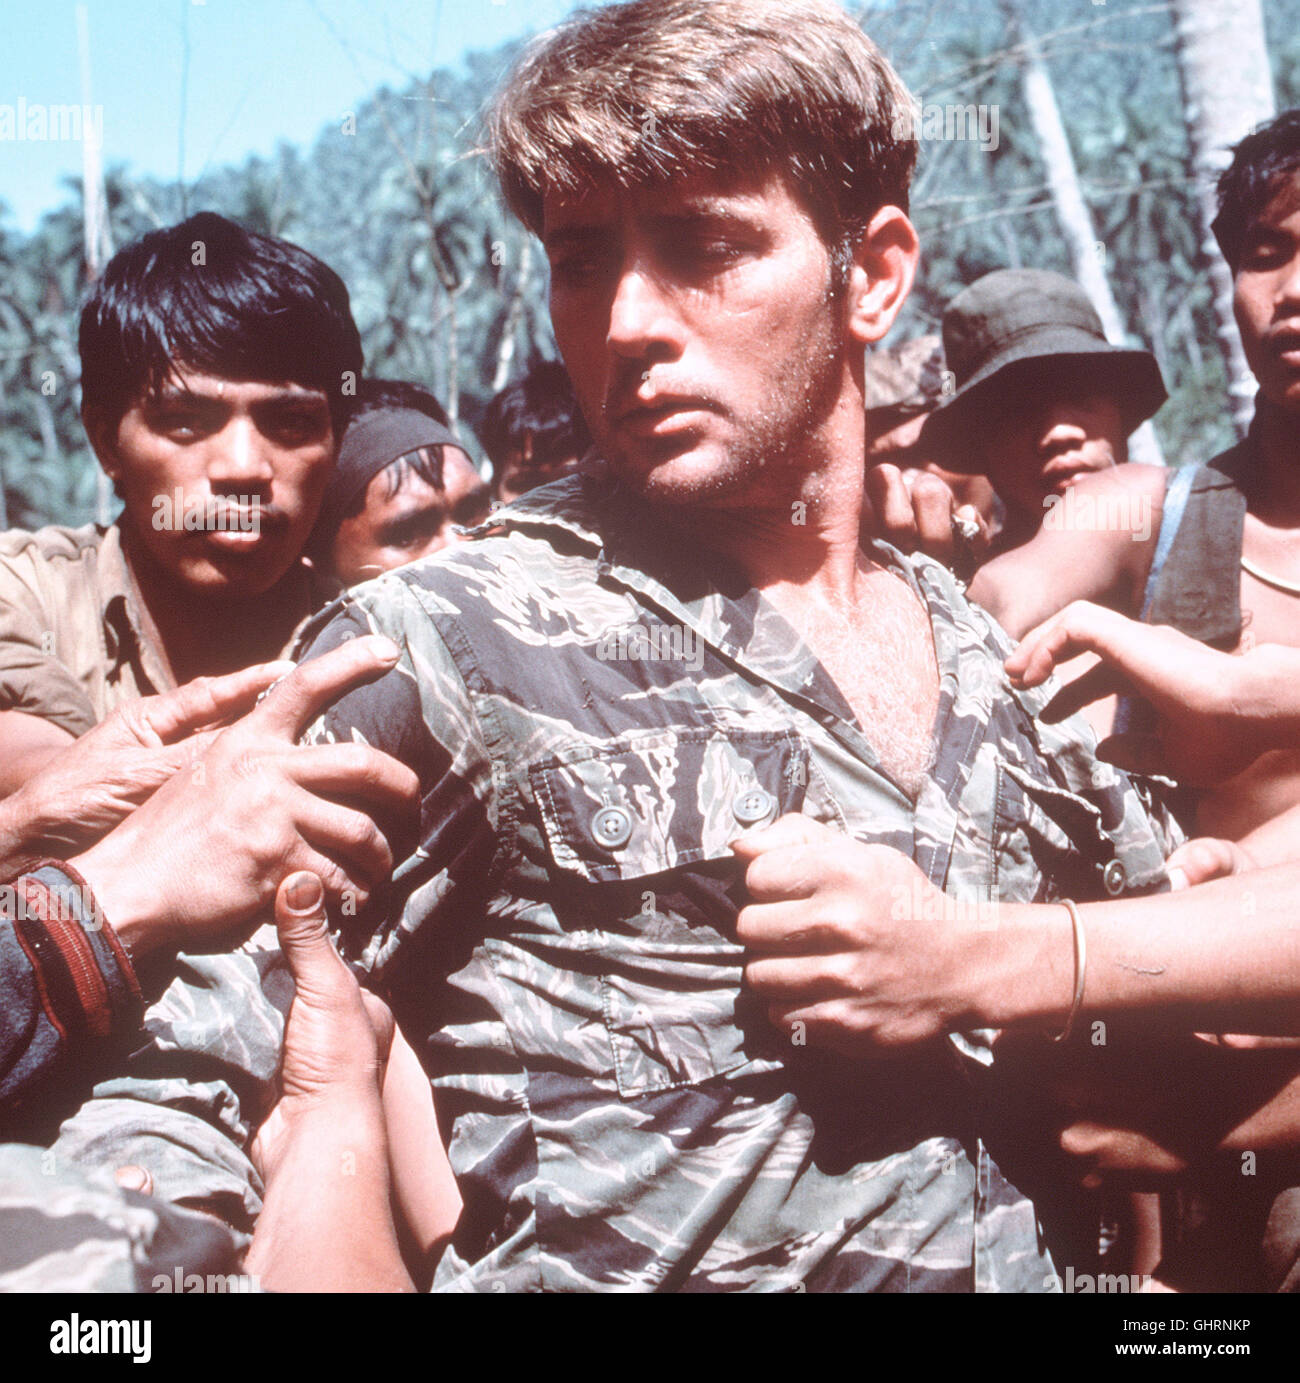 APOCALYPSE NOW-5 Saigon 1969. Hauptmann B.L. Willard (MARTIN SHEEN) erhält einen Geheimauftrag: Er solle einen gewissen Oberst Walter E. Kurtz aufspüren und liquidieren. Oberst Kurtz, ein Offizier mit einer militärischen Bilderbuchkarriere, hat sich von der kämpfenden Truppe verabschiedet. In der Nähe der kambodschanischen Grenze führt er ein barbarisches Regiment und tötet wahllos alles, was sich ihm in den Weg stellt ... Regie: Francis Ford Coppola aka. Apocalypse Now Stock Photo